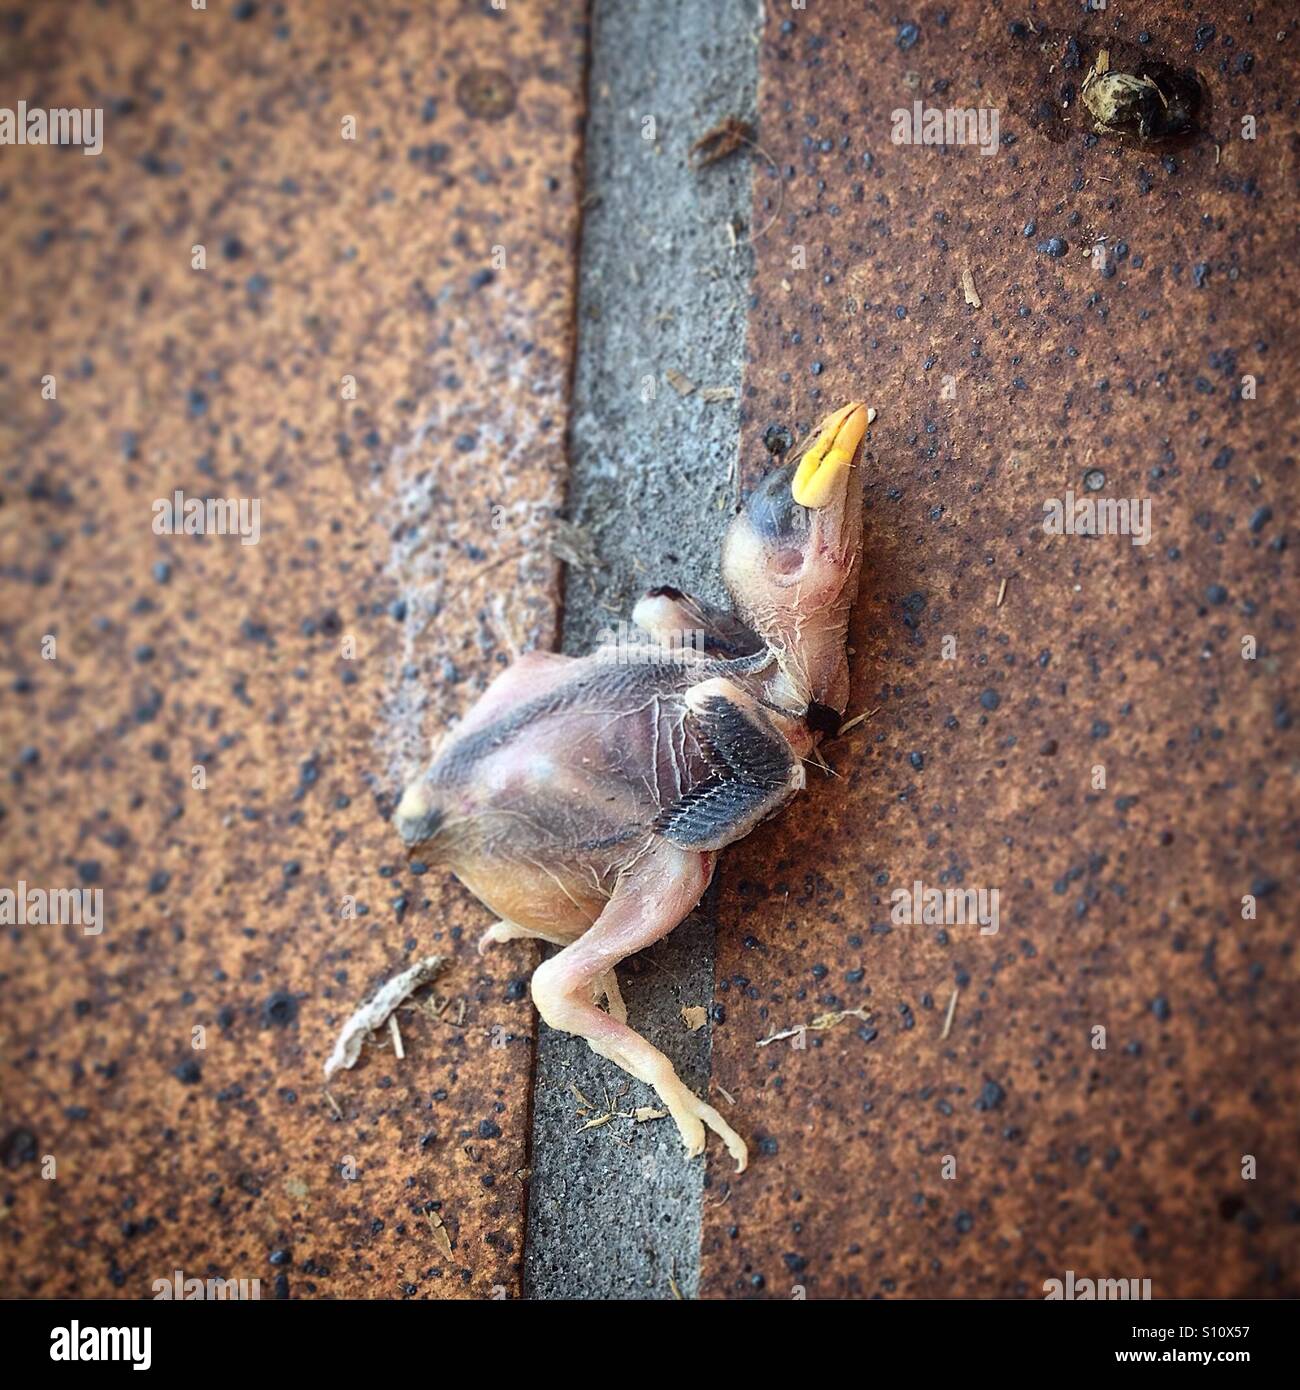 A dead baby bird in Prado del Rey, Sierra de Cadiz, Andalusia, Spain Stock Photo